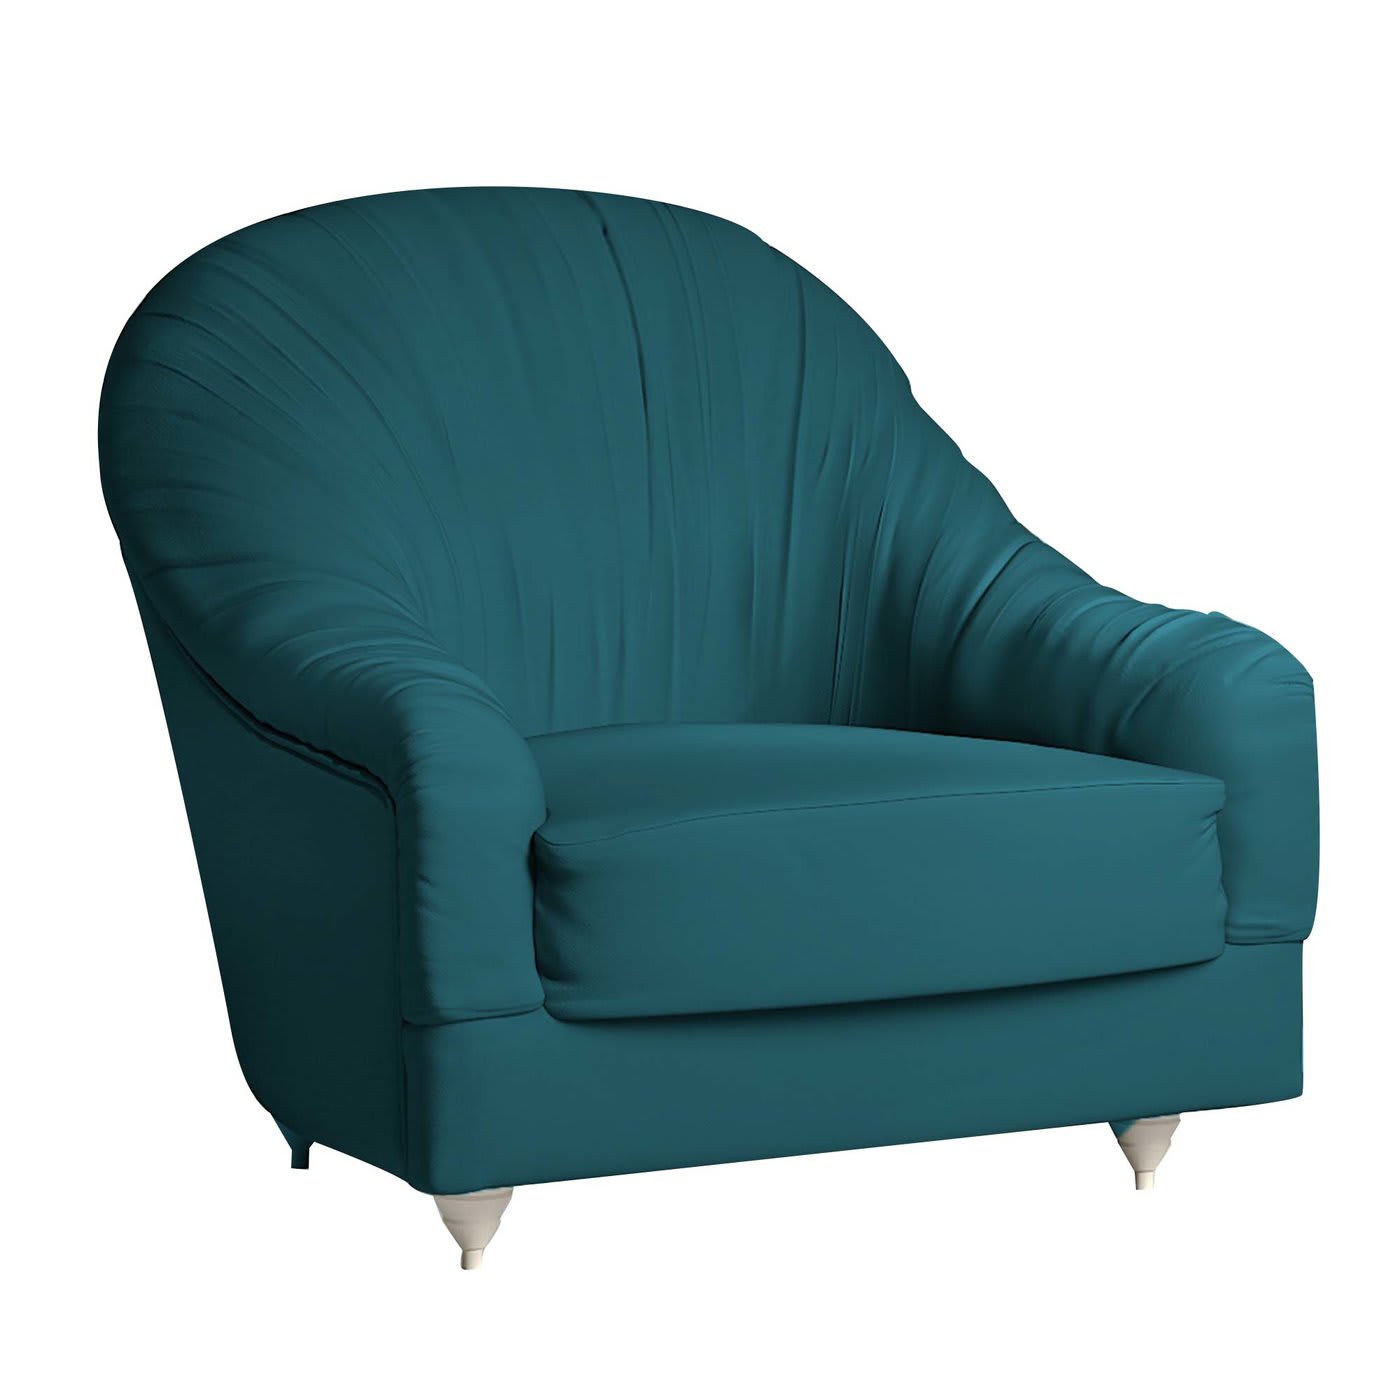 Nuagette Blue armchair - Vismara